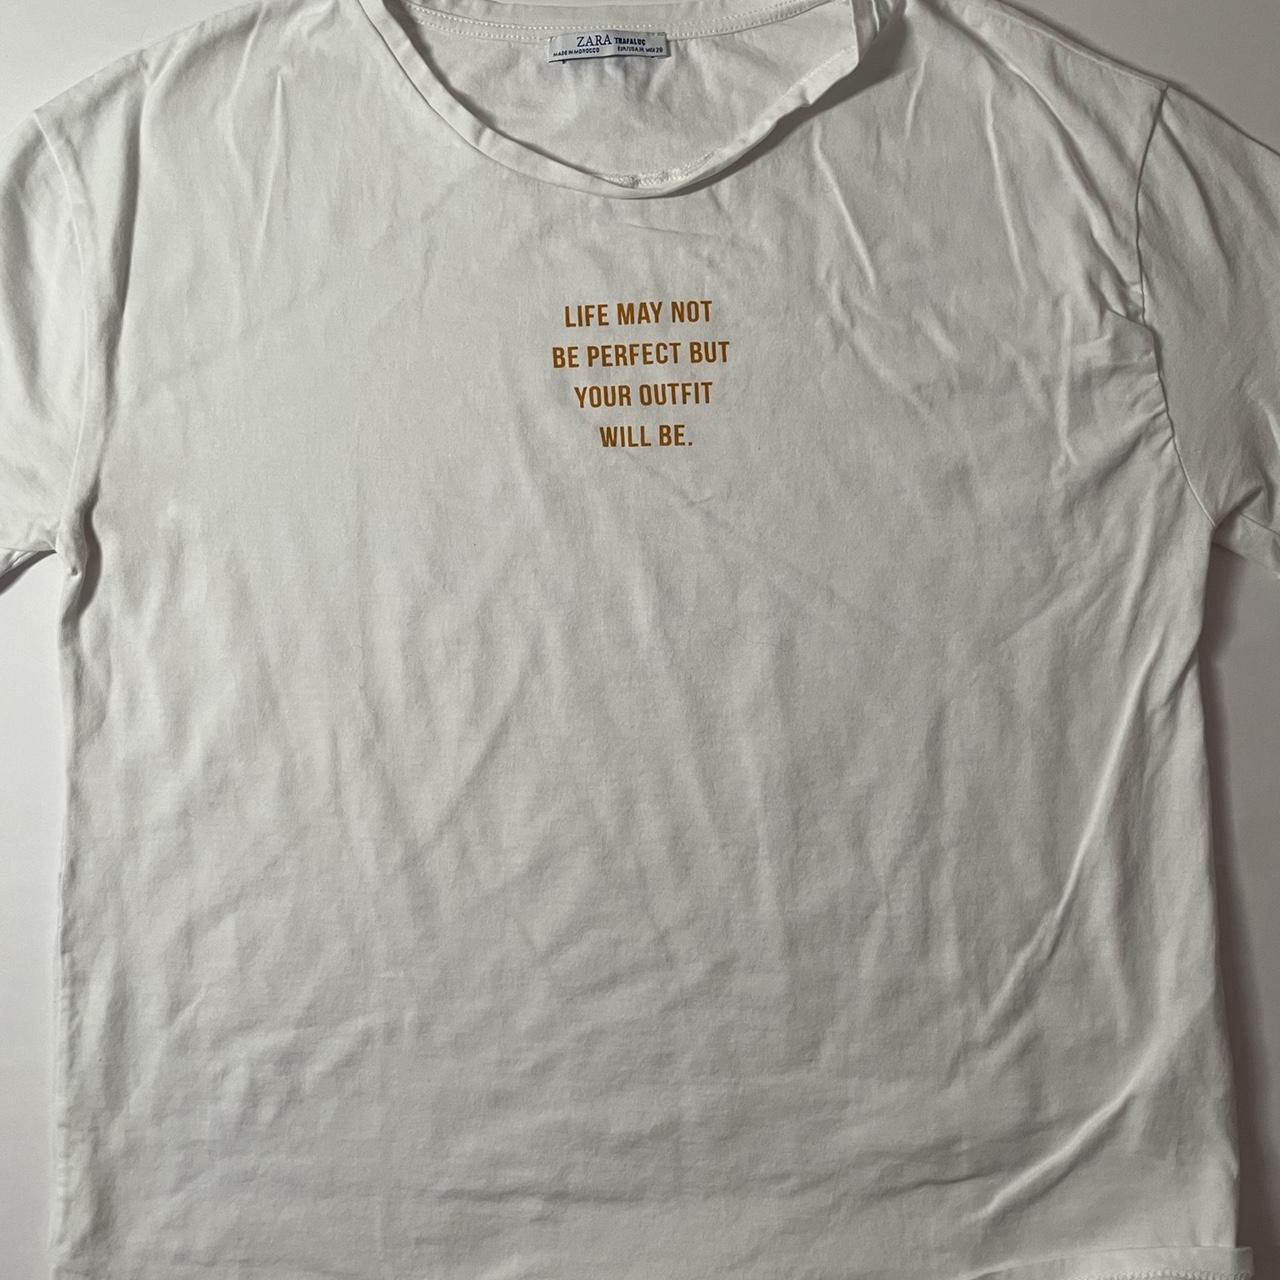 Zara Women's White and Yellow T-shirt | Depop